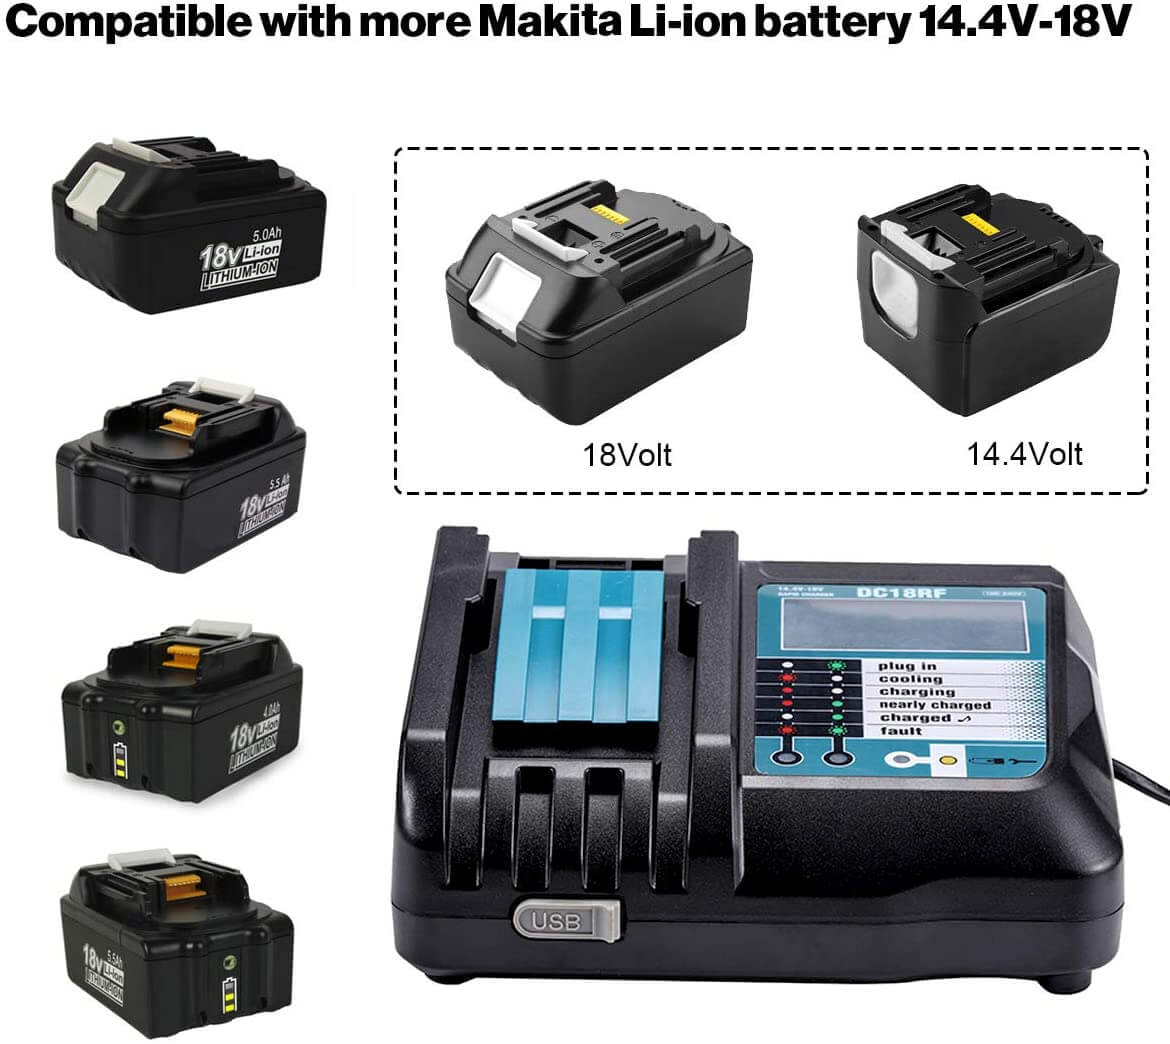 BL1850+DC18RF 3.5A Li-Ion Ersatz Ladegerät für Makita 14.4V-18V akku Ladegeräte